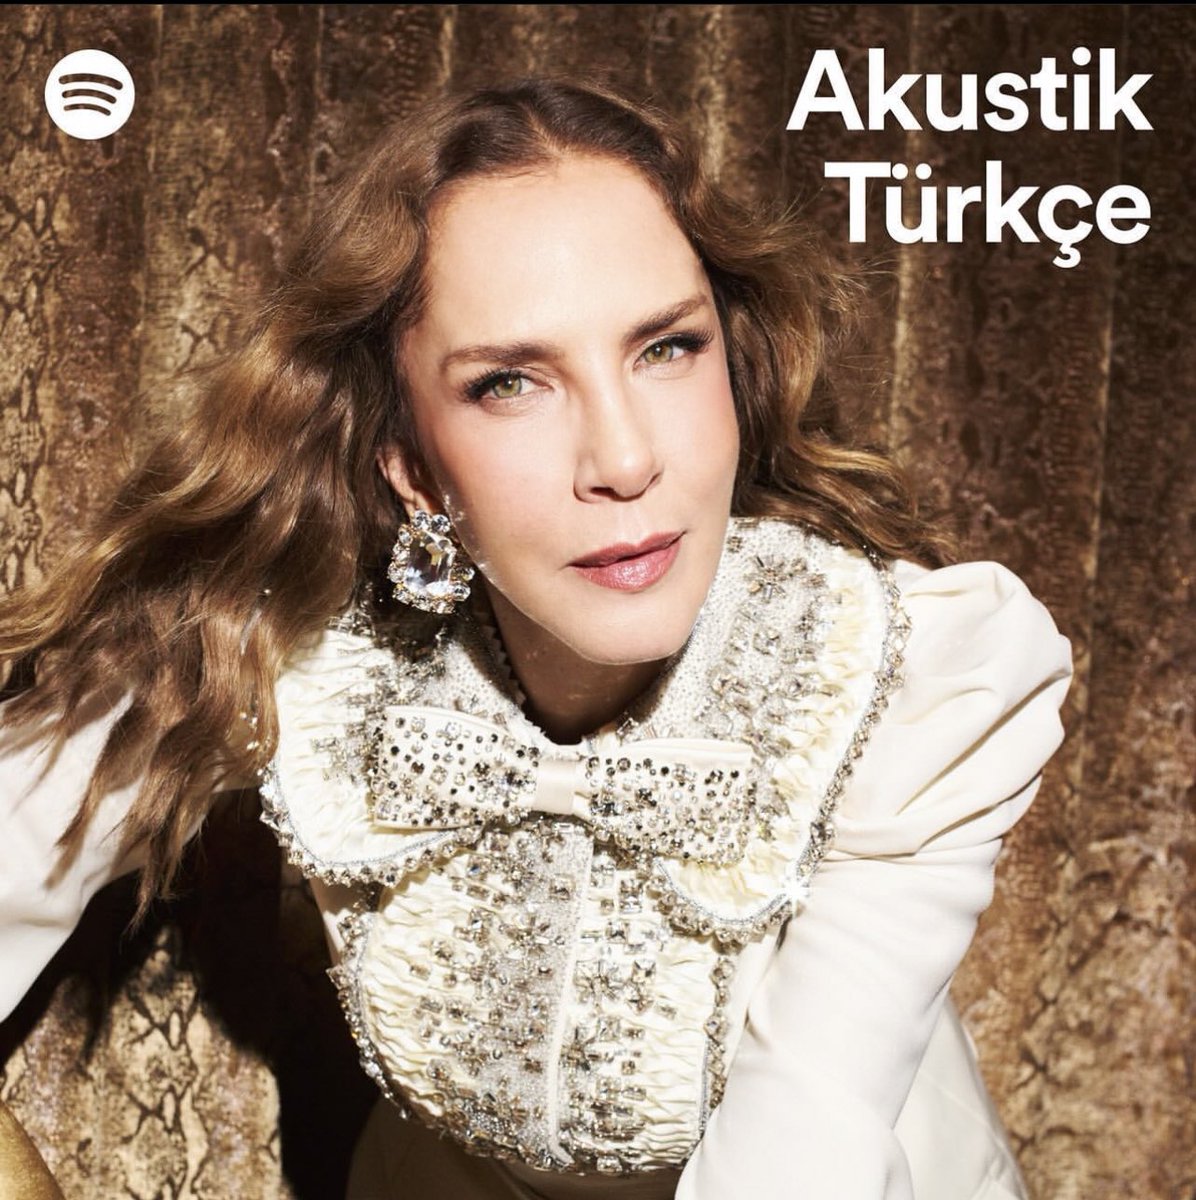 Bu hafta, Spotify Akustik Türkçe’de kapak; Sertab Erener! 
@SpotifyTurkiye #sertaberener #akustiktürkçe